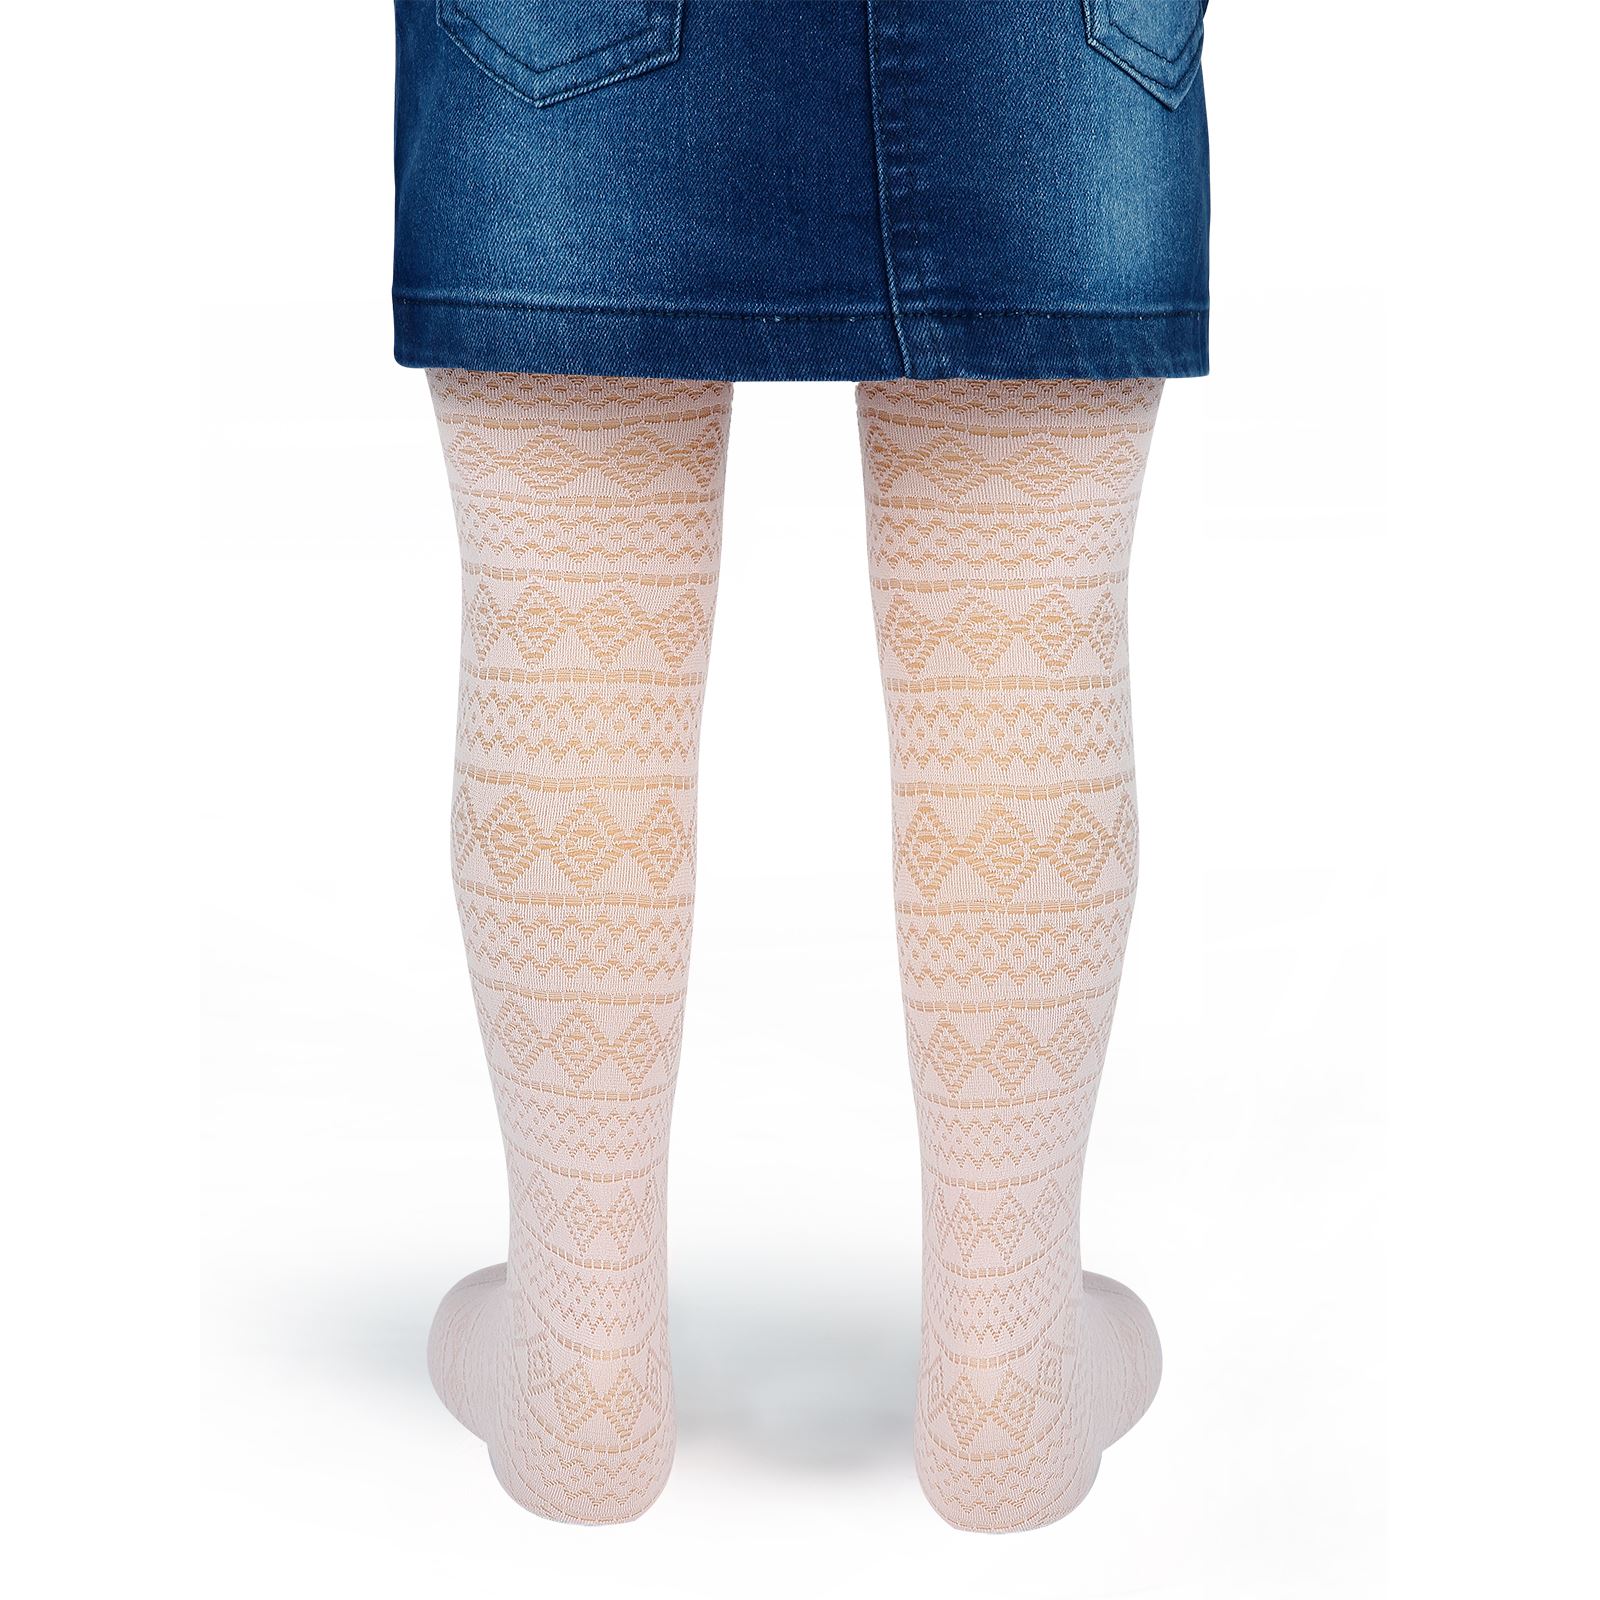 Bella Calze Kız Çocuk Külotlu Çorap 2-11 Yaş Toz Pembe